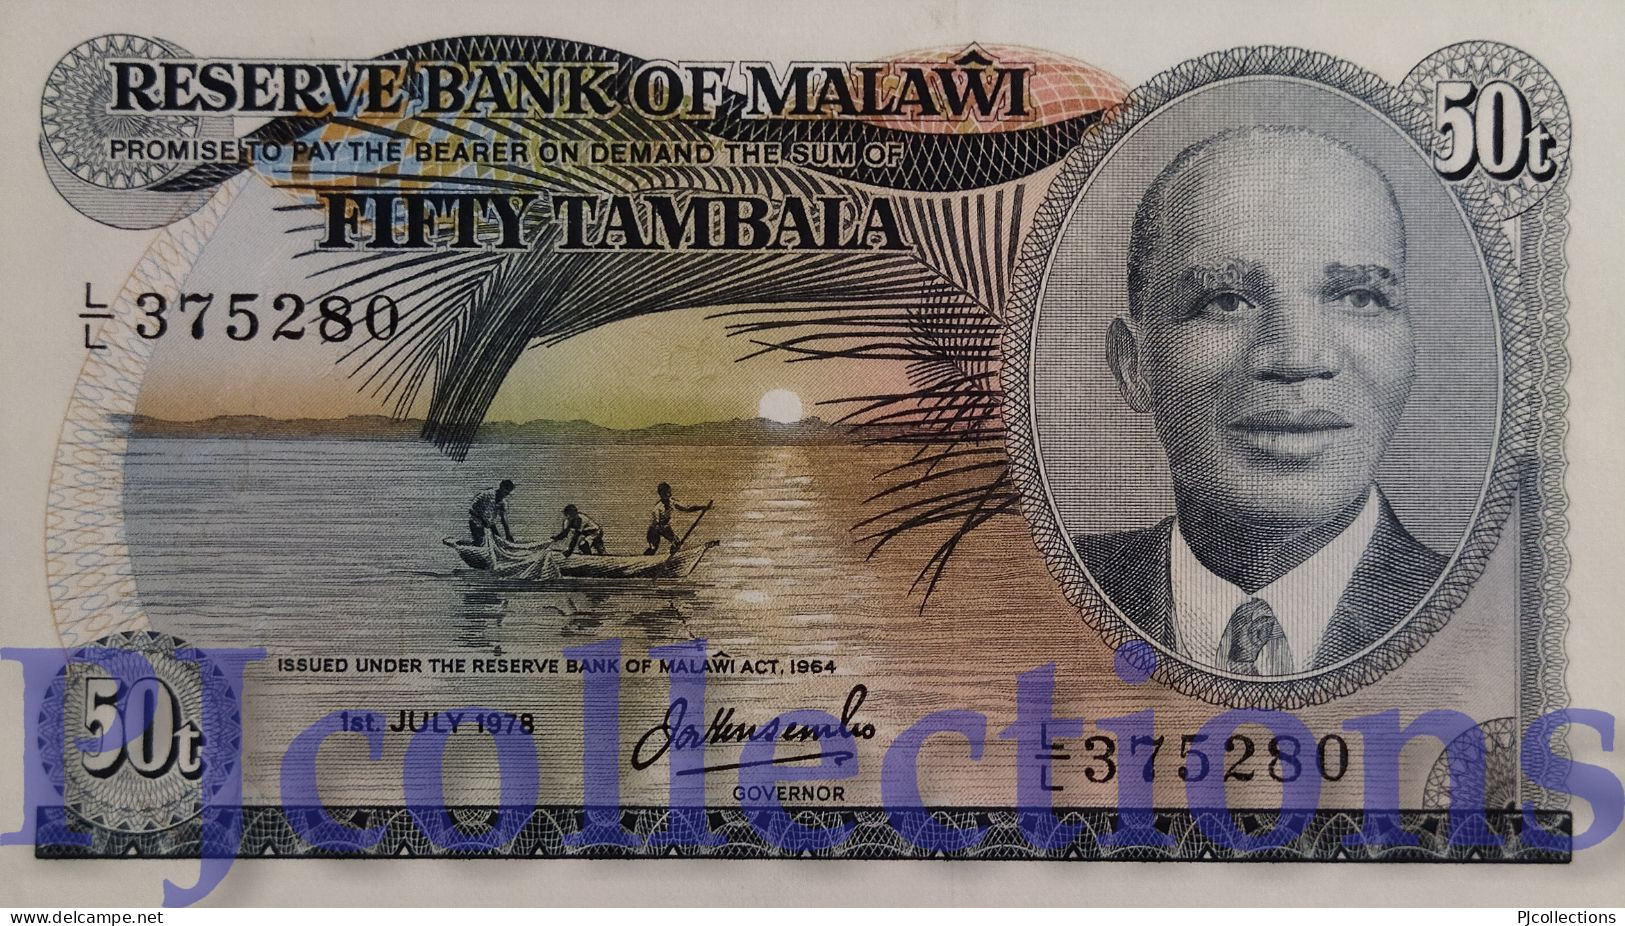 MALAWI 50 TAMBALA 1978 PICK 13b UNC - Malawi